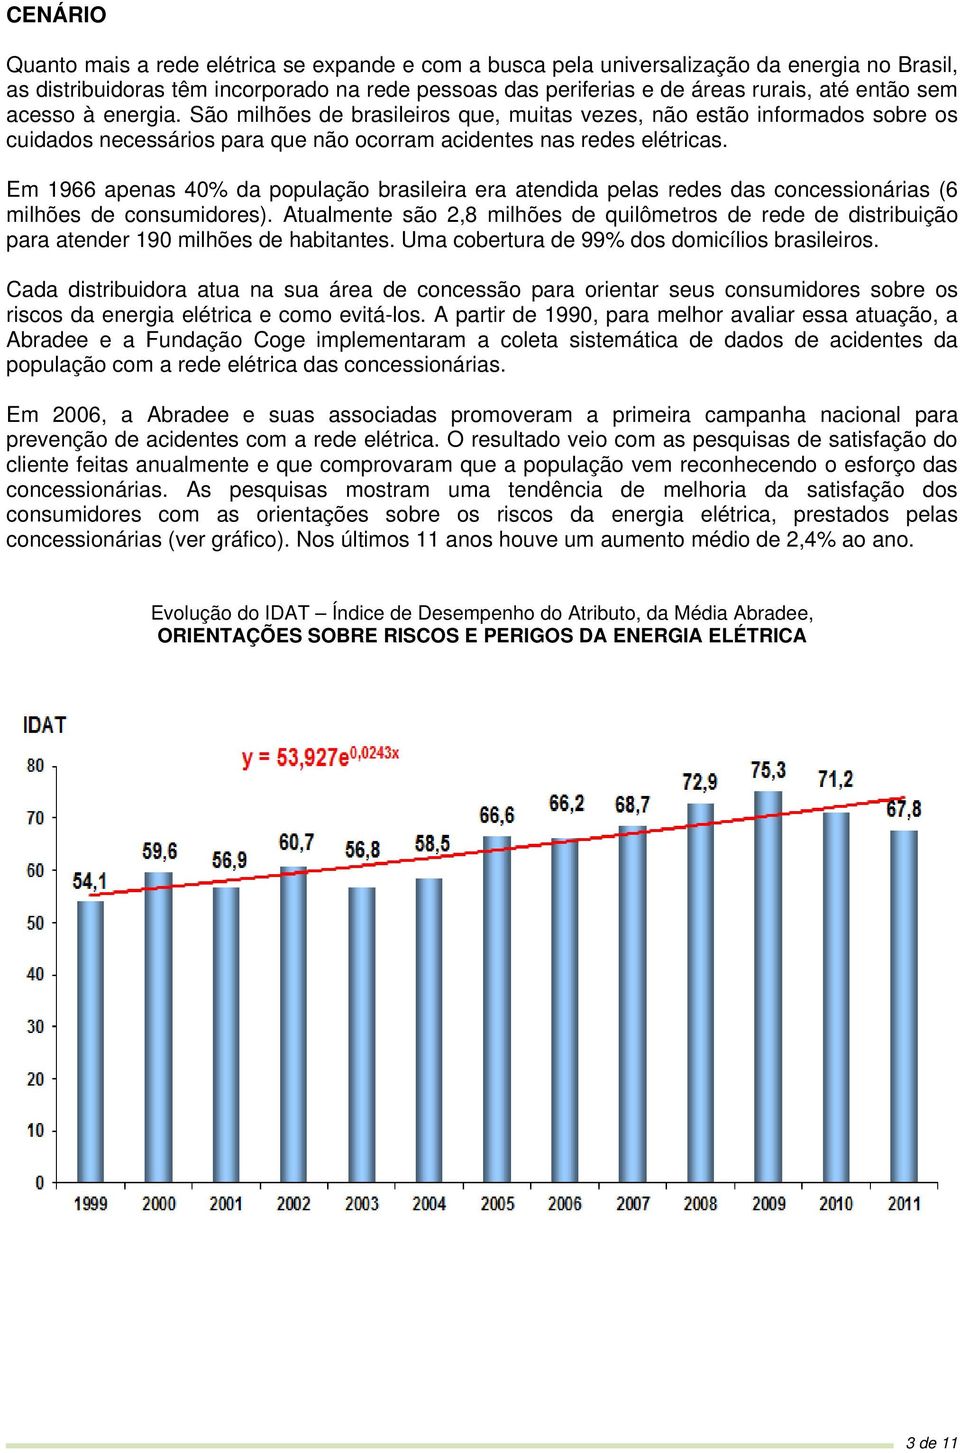 Em 1966 apenas 40% da população brasileira era atendida pelas redes das concessionárias (6 milhões de consumidores).